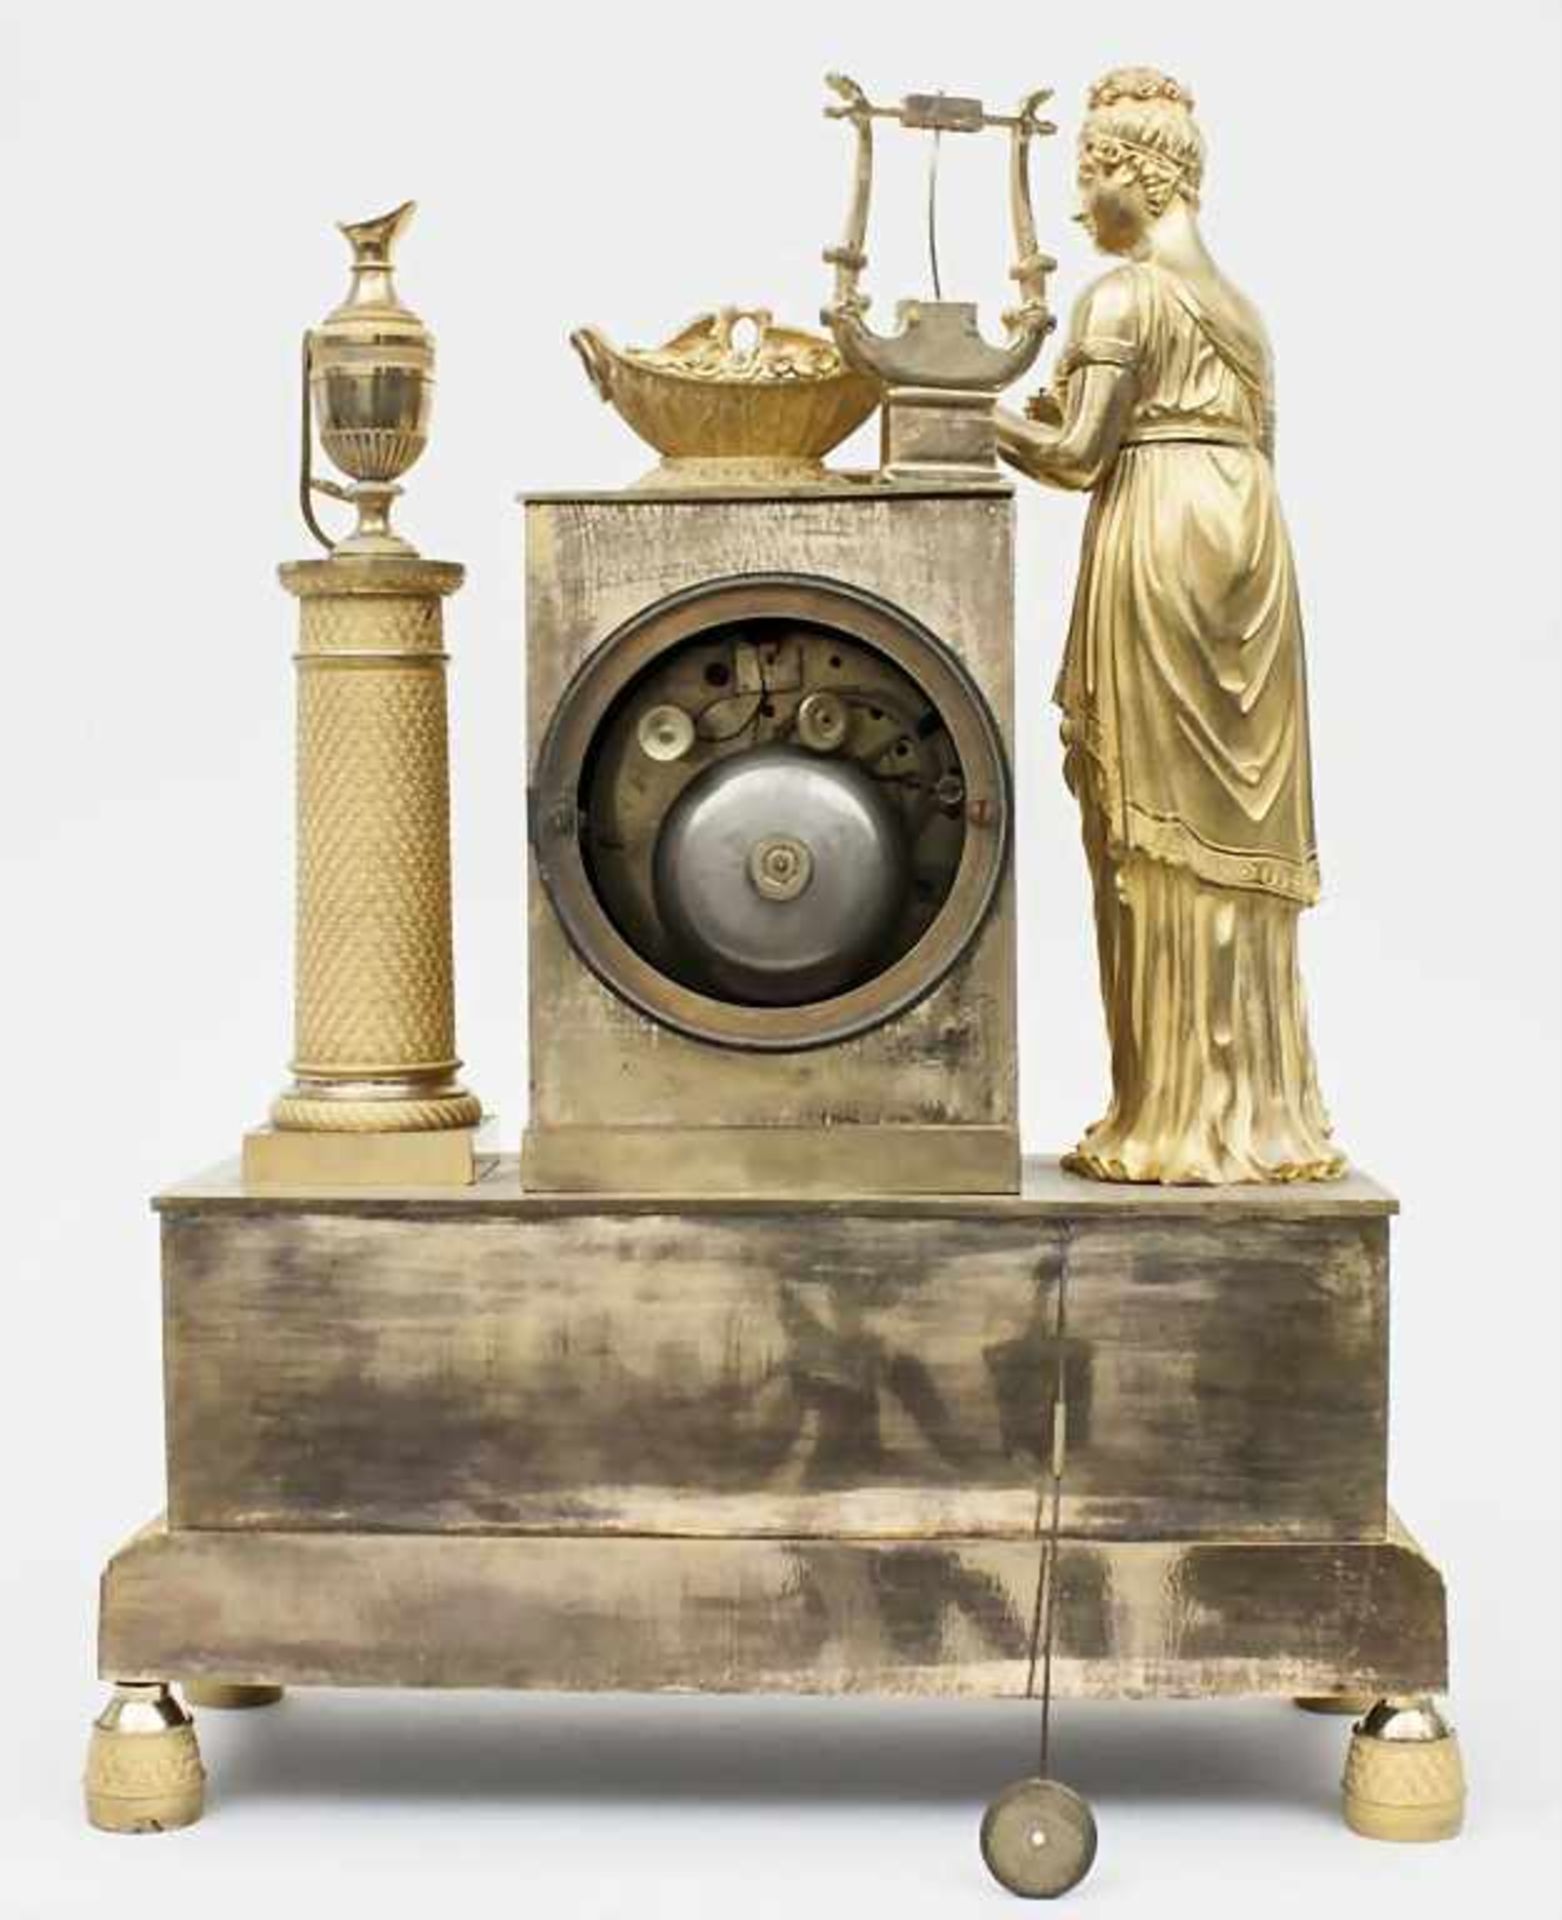 Pendule, Époque Restauration, Frankreich/France, ca. 1820< - Image 3 of 3